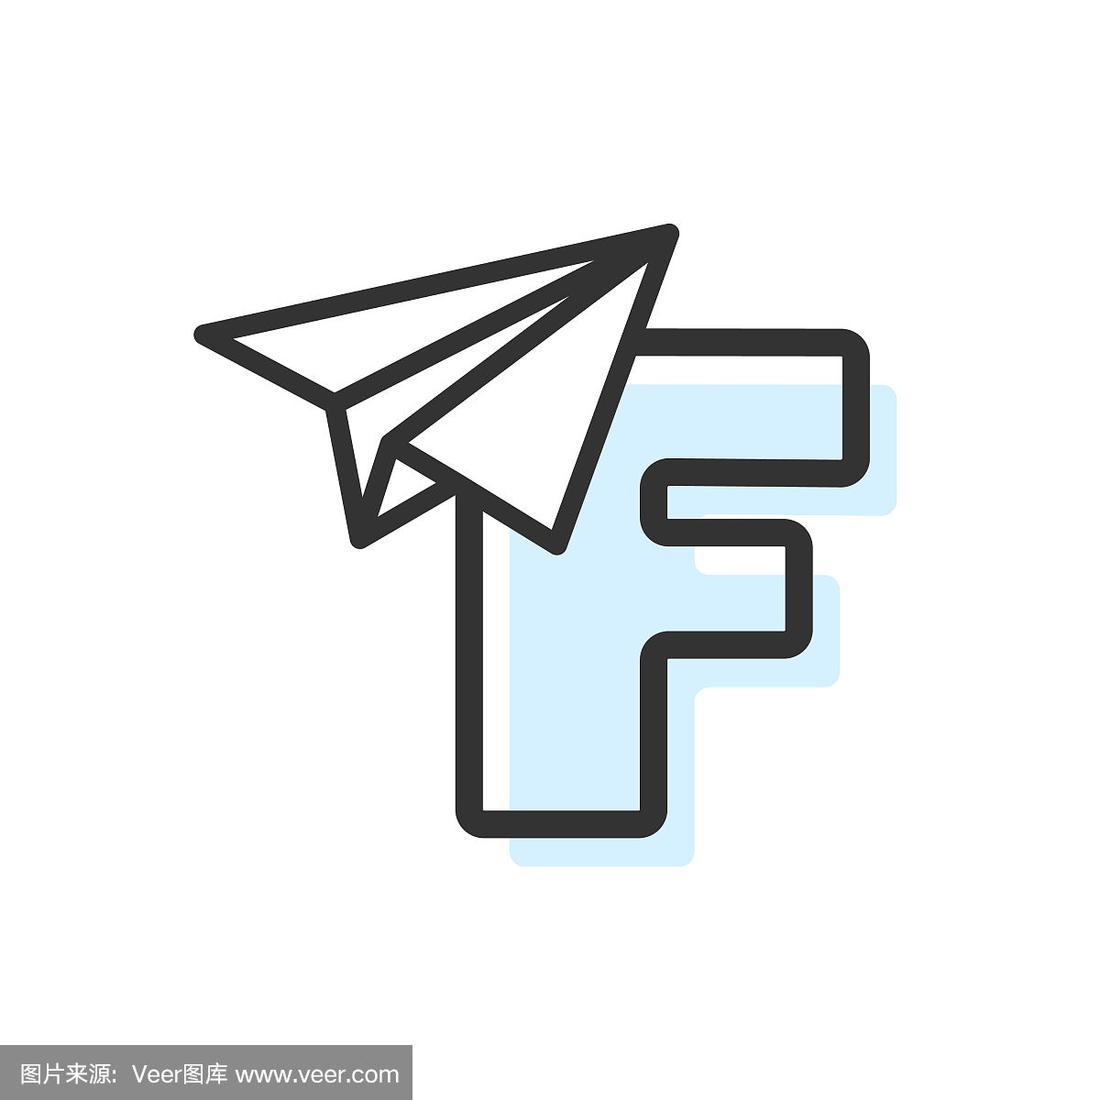 纸飞机英语软件下载-纸飞机软件英文名叫什么